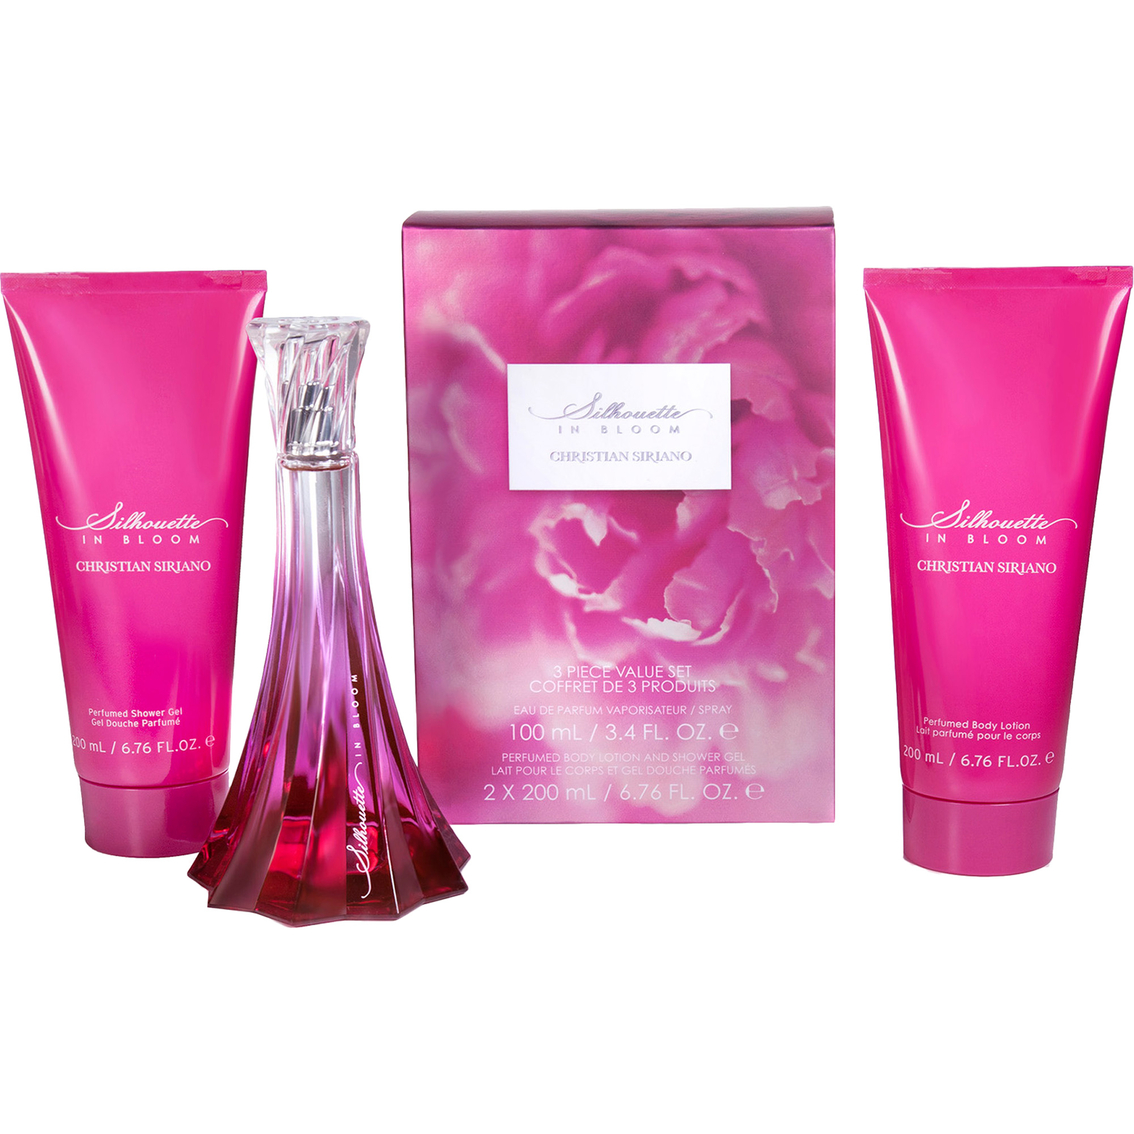 Christian Siriano Silhouette In Bloom Eau de Parfum 3 pc. Gift Set